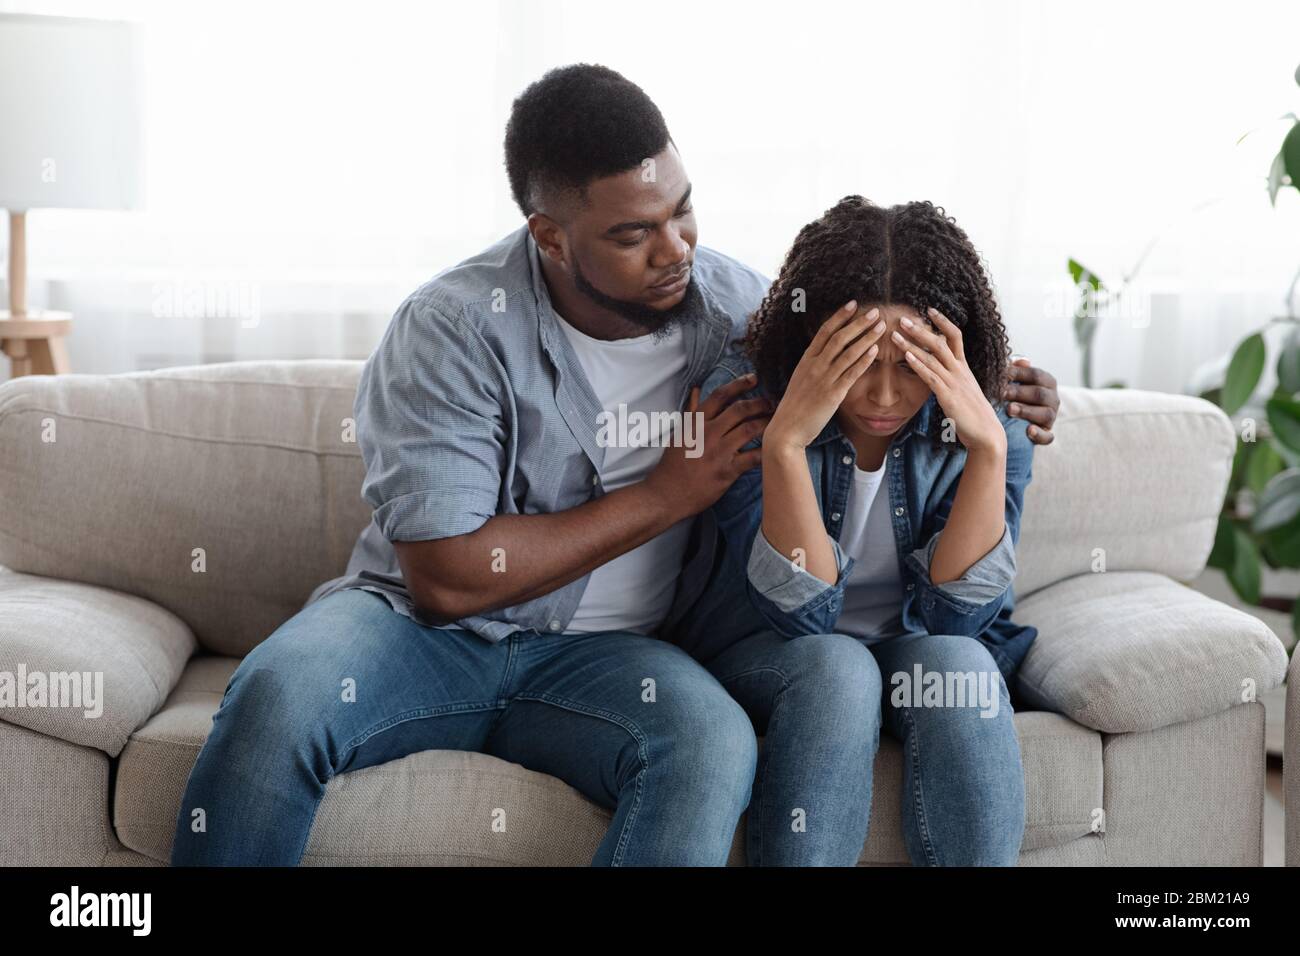 Homme noir de soutien réconfortant sa petite amie contrariée à la maison, exprimant de l'empathie Banque D'Images